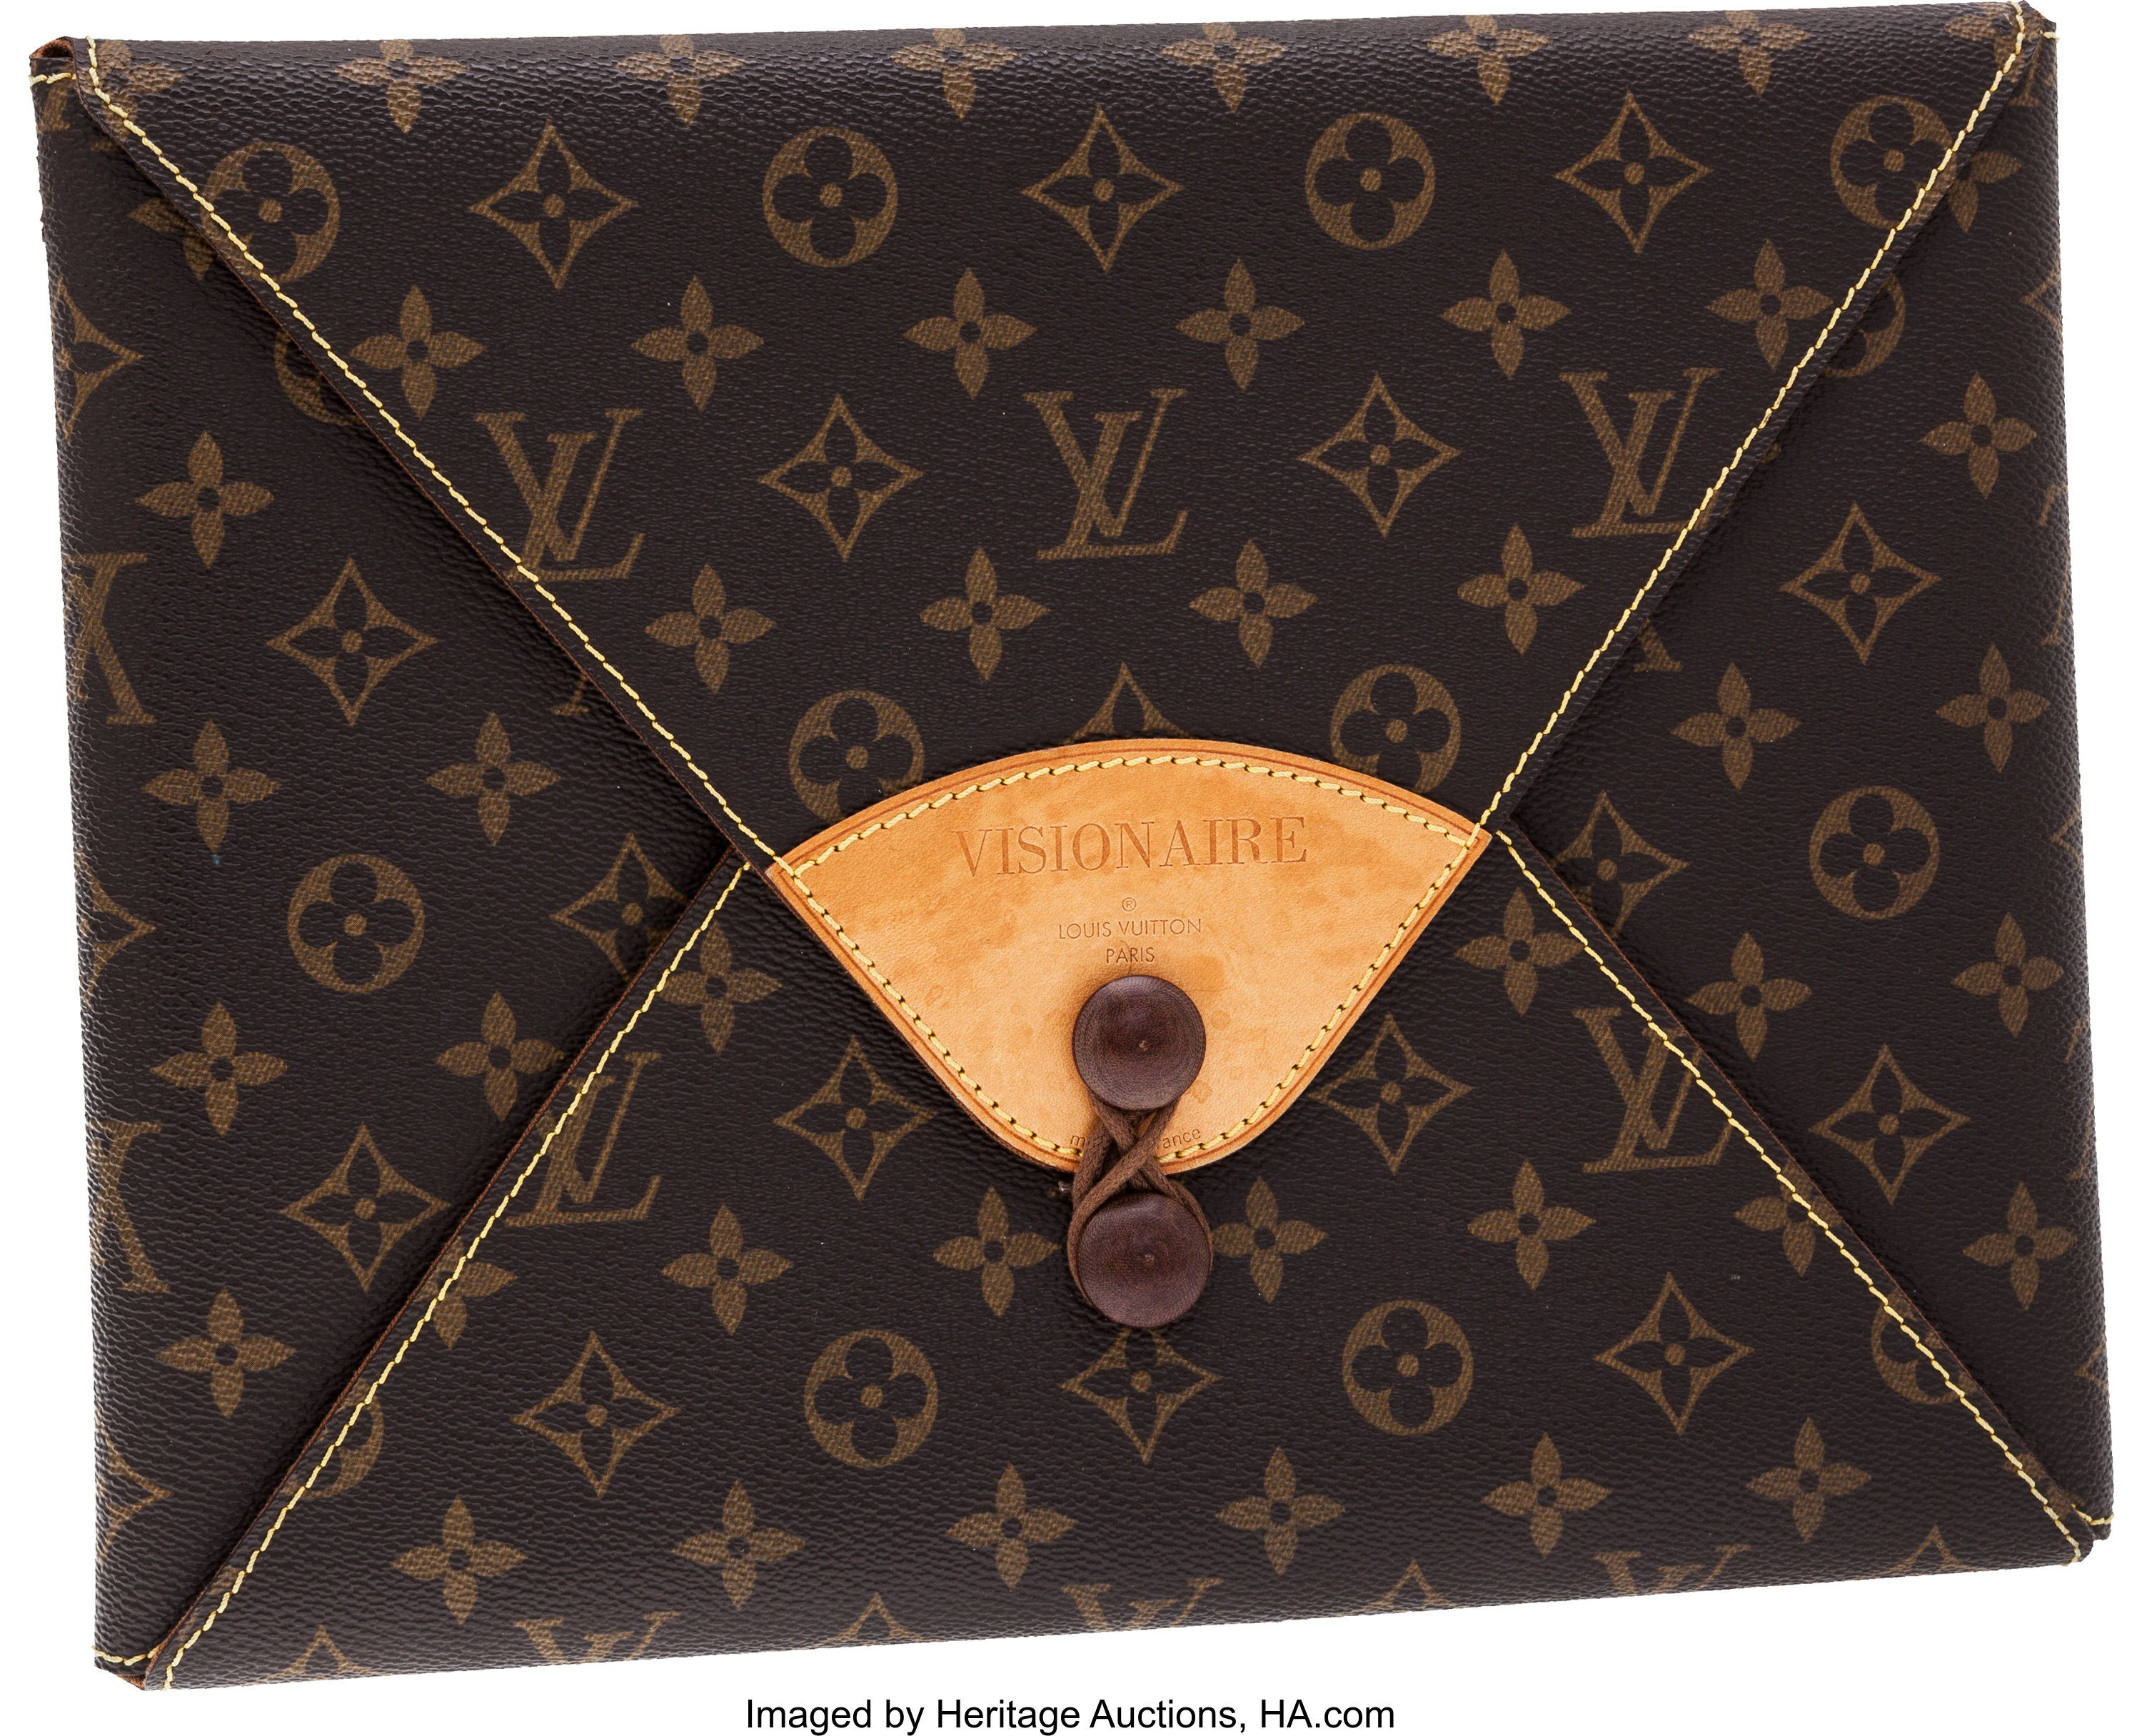 Lot 341 - Louis Vuitton Black Epi Lussac Bag